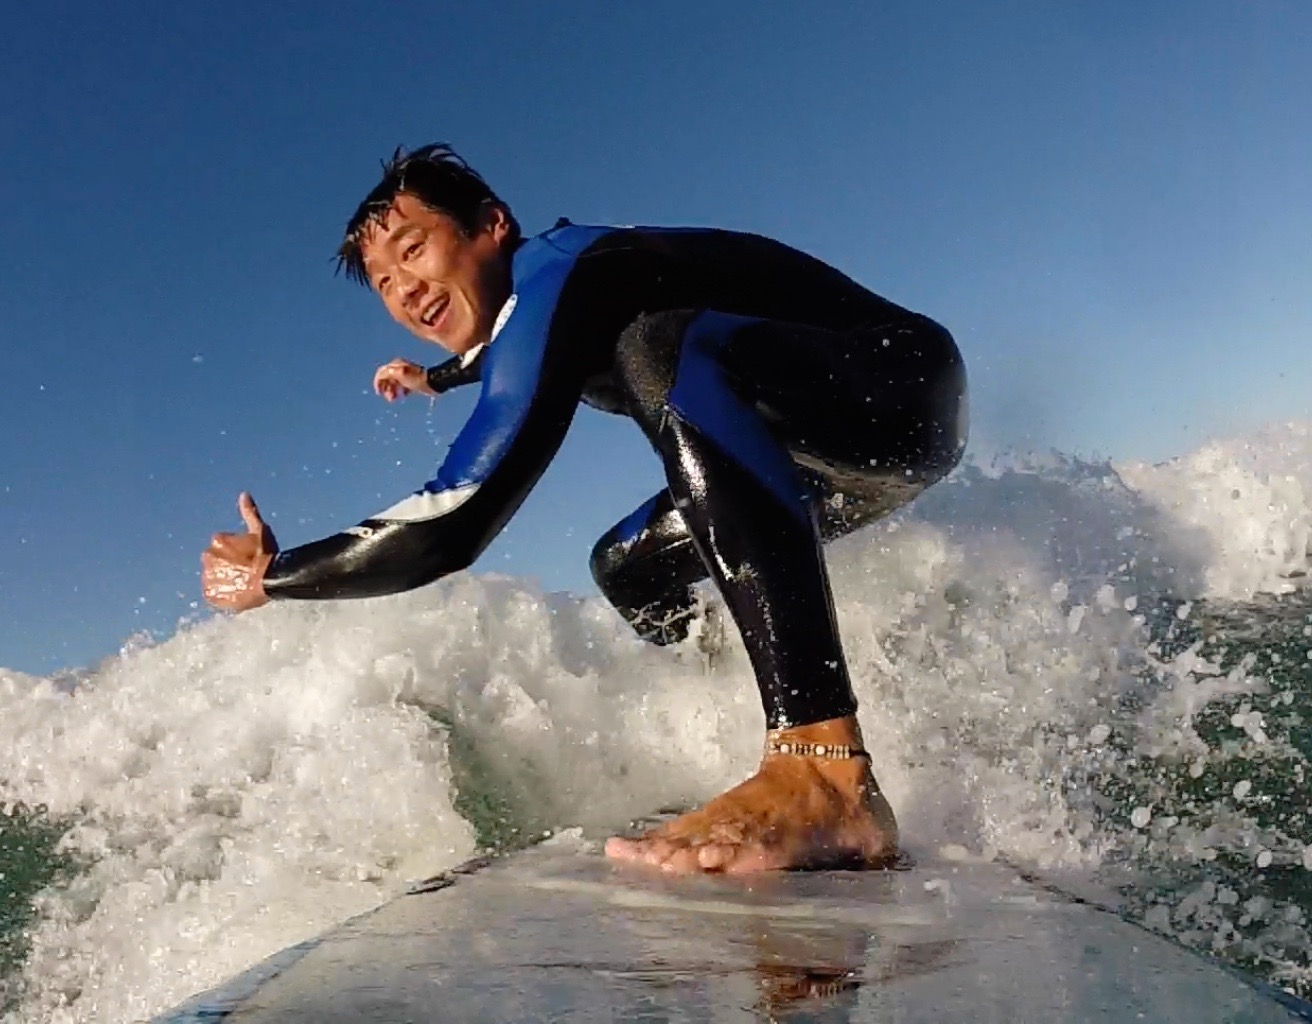 Sam surfing GoPro photo